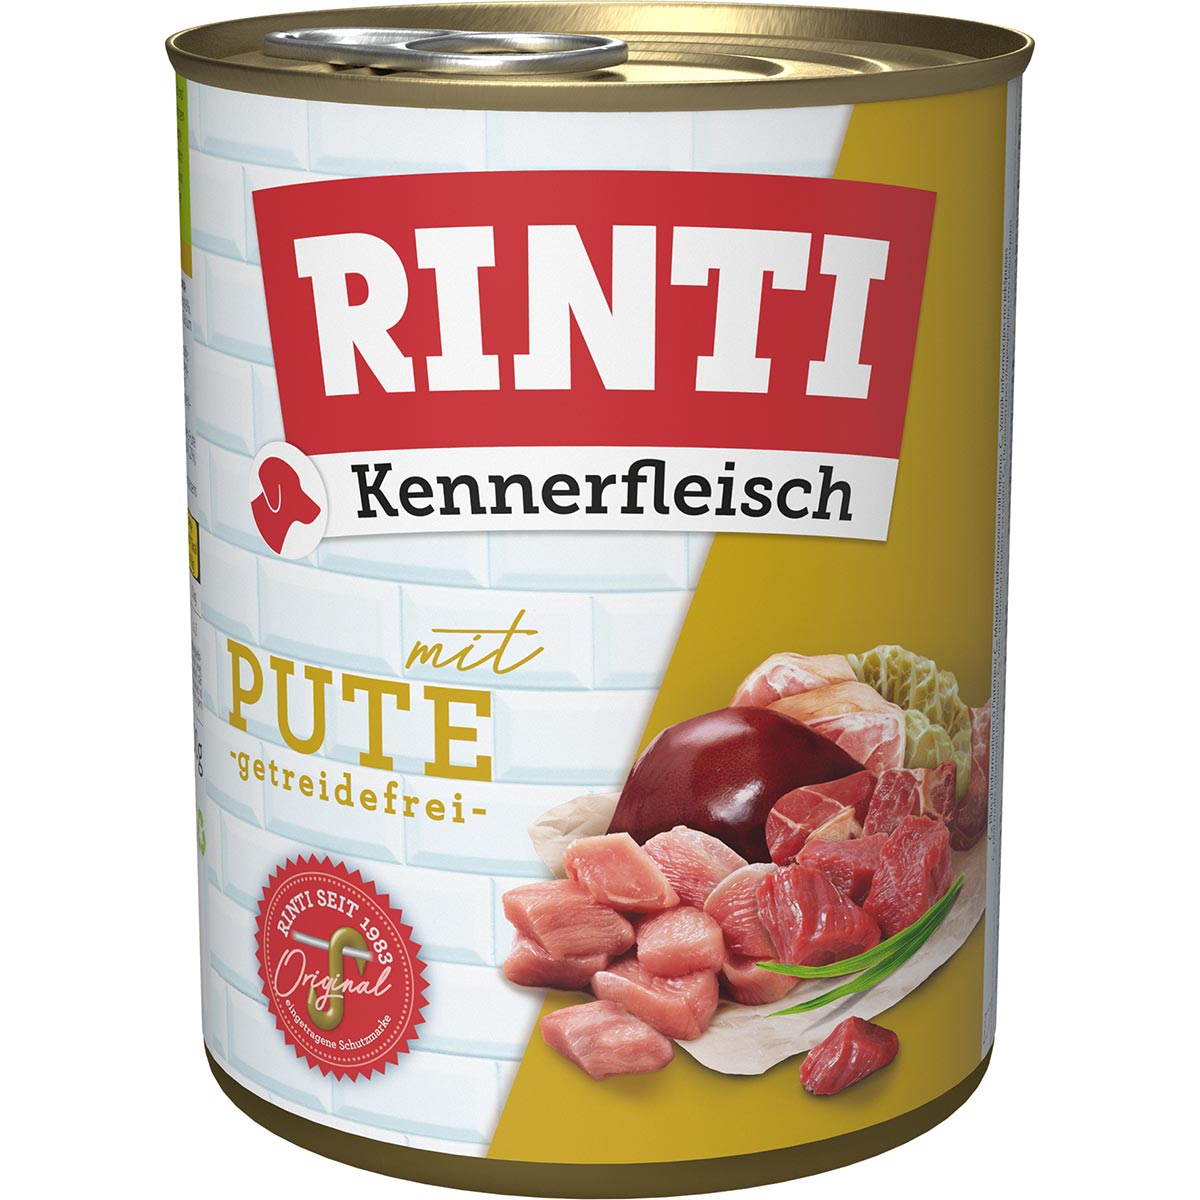 Rinti Kennerfleisch Pute 24x800g von Rinti